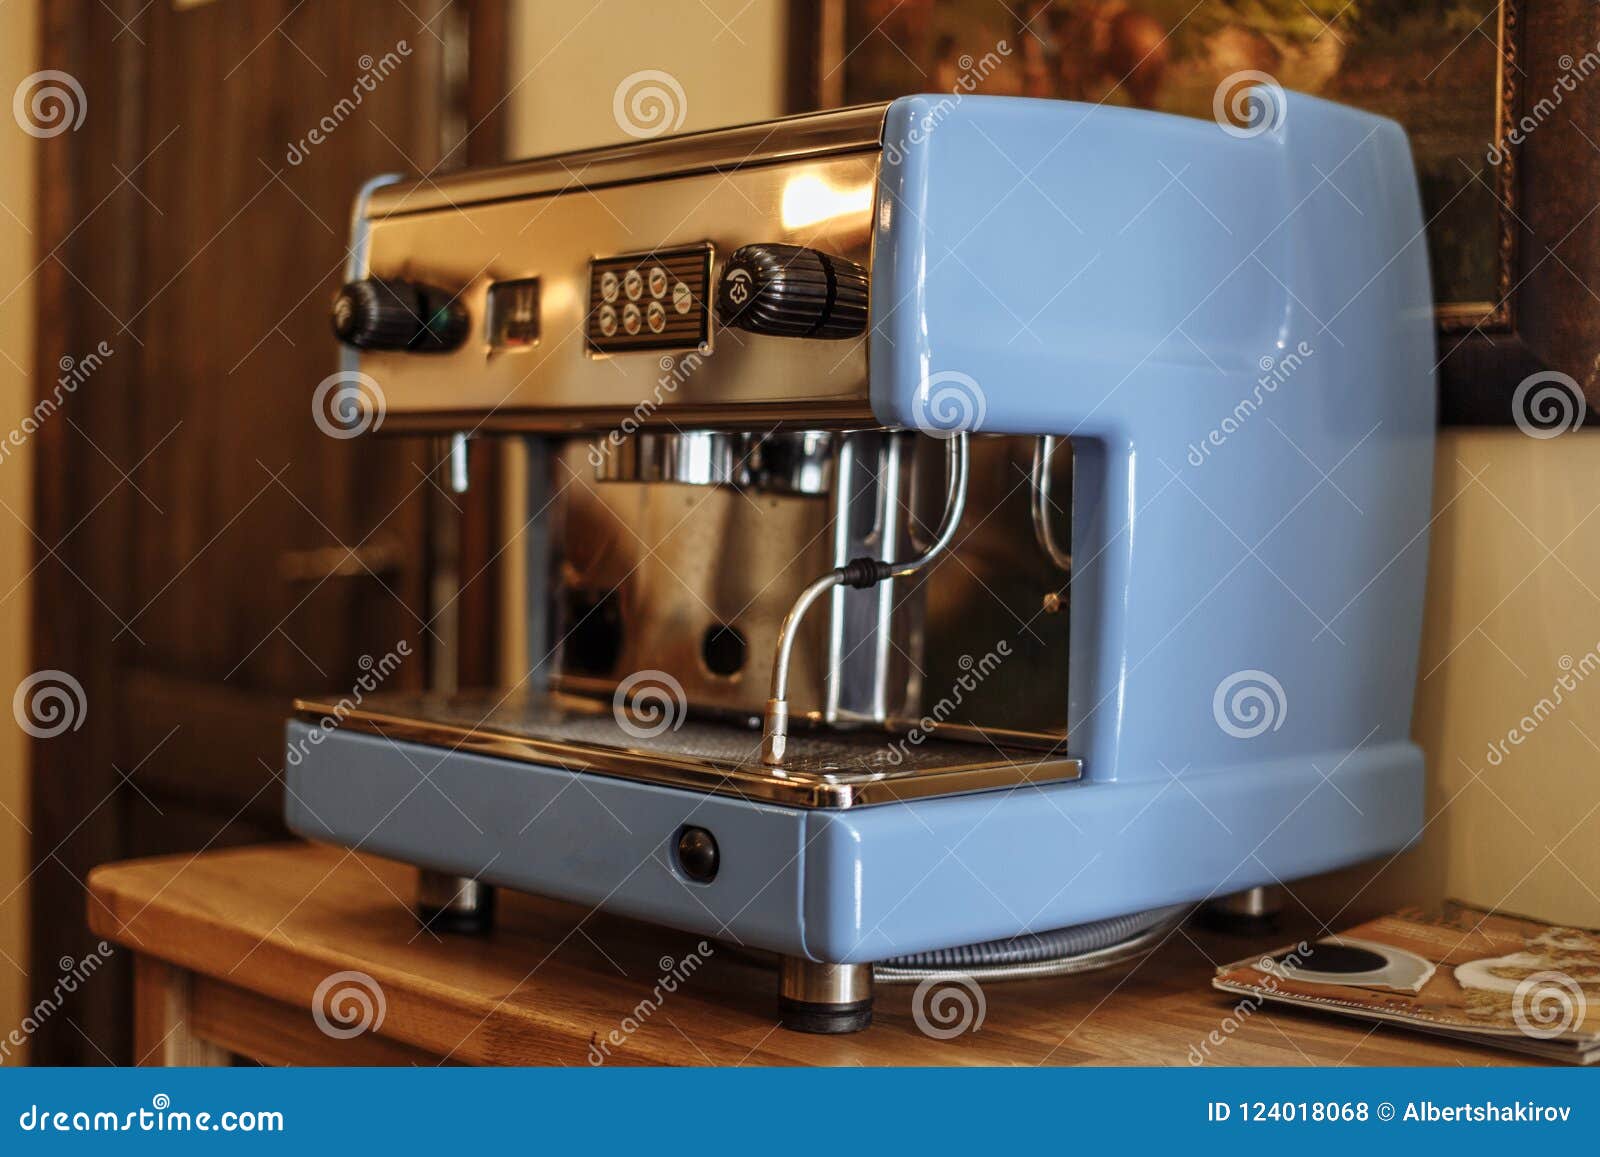 Sleutel Productief ongeduldig Oude Blauwe Koffiemachine Bij De Koffie Stock Foto - Image of huis,  voedsel: 124018068